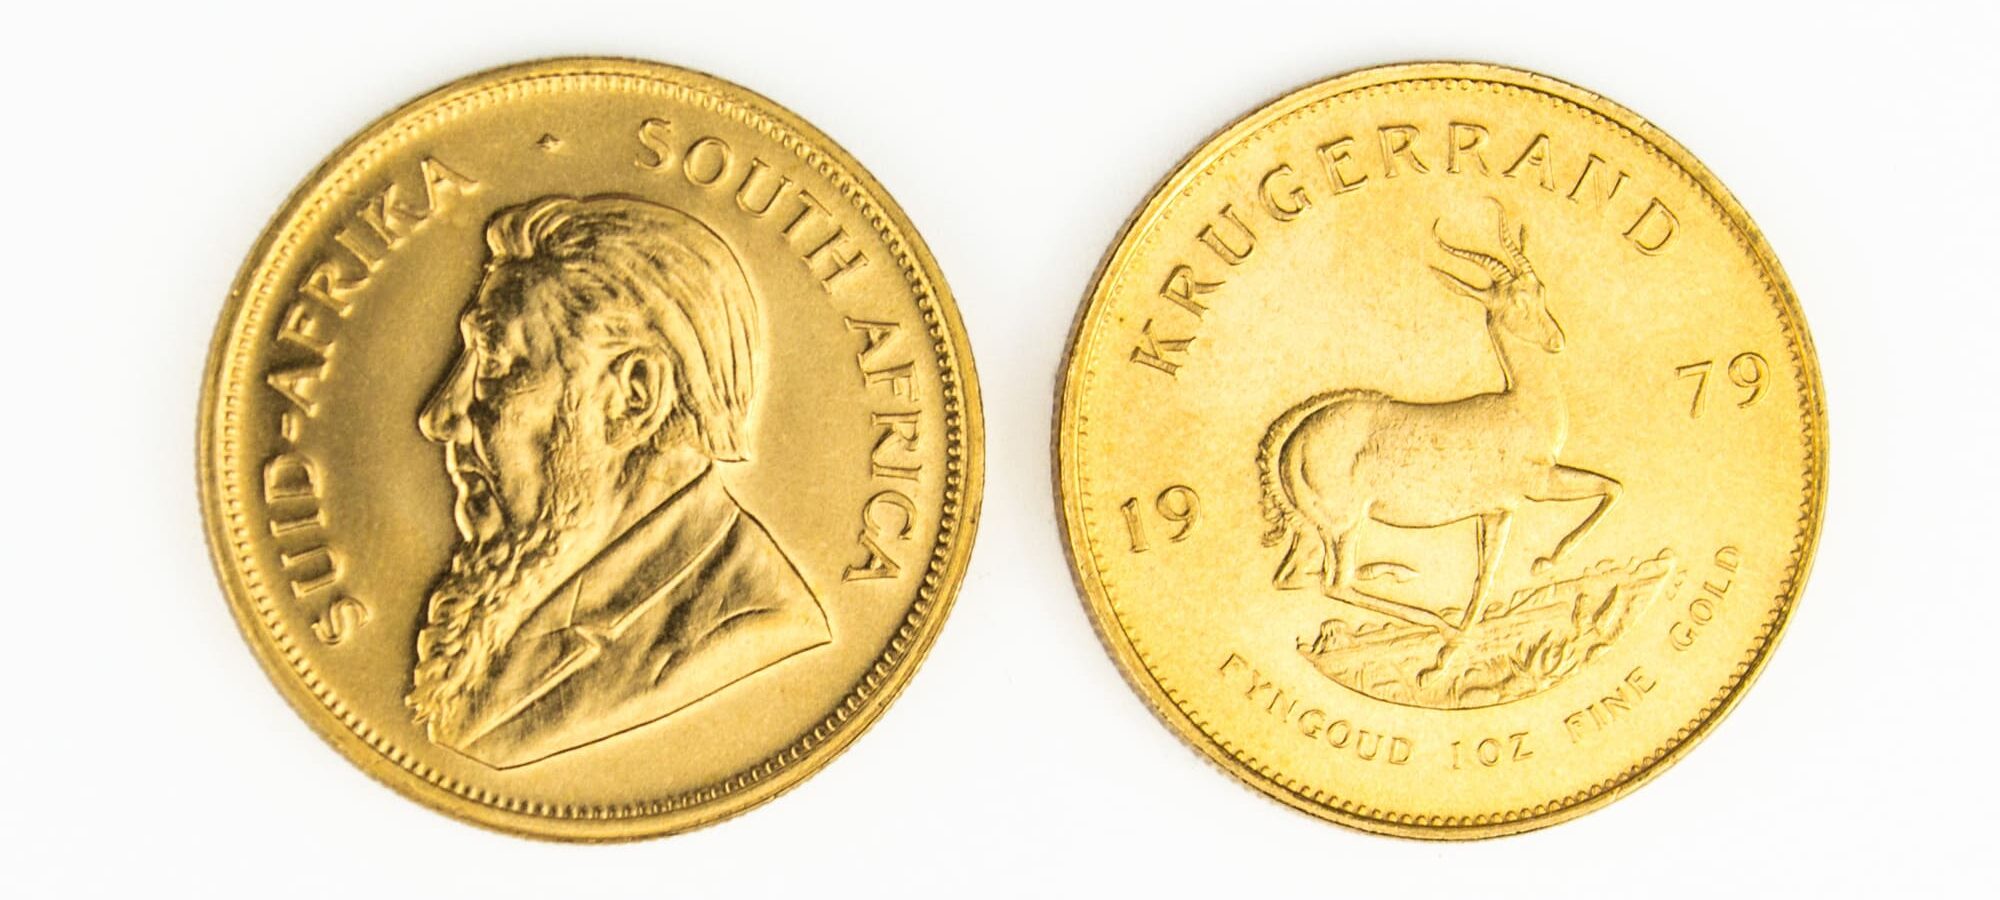 Image of a gold Krugerrand